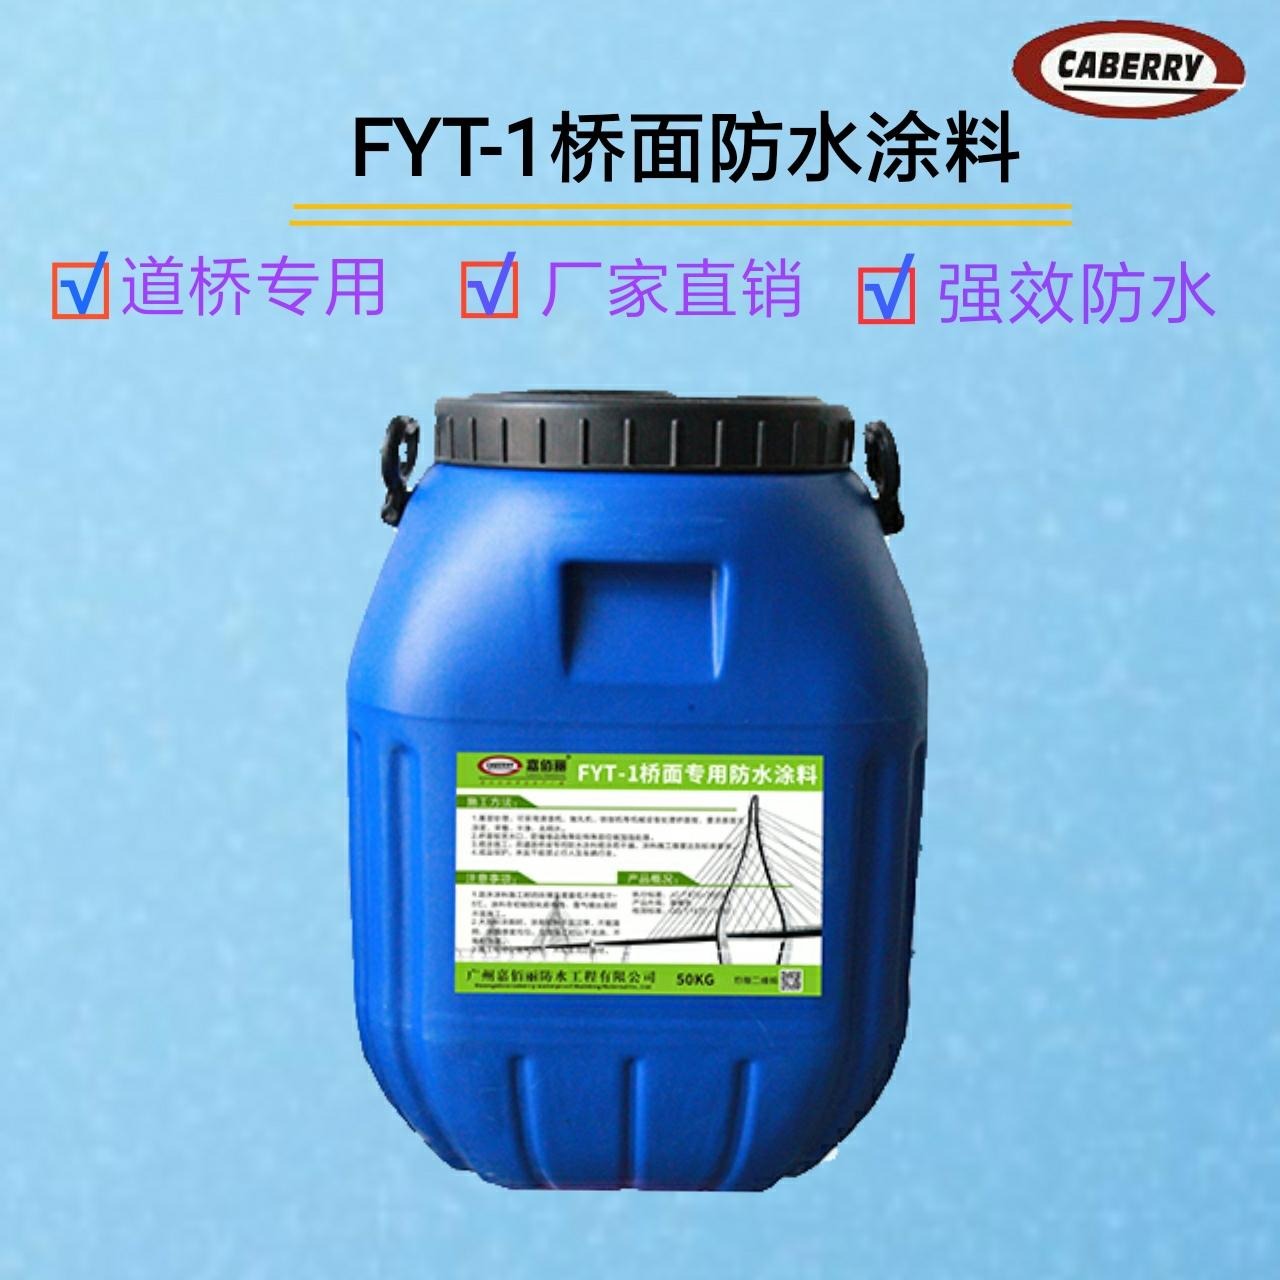 FYT-1桥面防水涂料 优质产品 质量为先